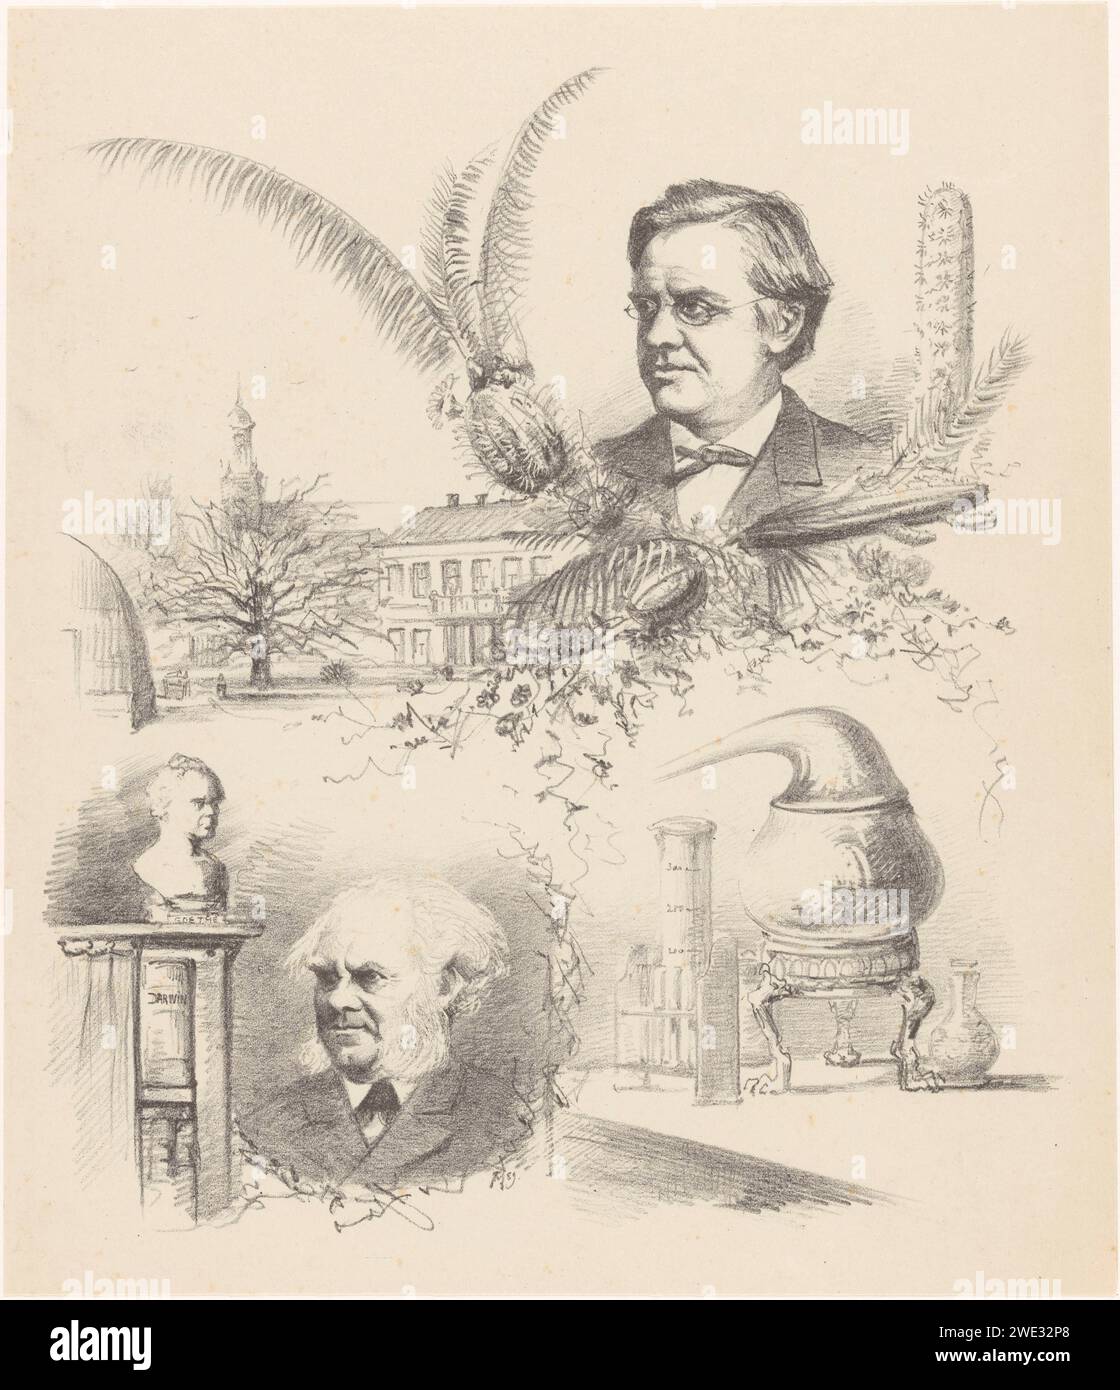 Quattro spettacoli riguardanti il Congresso natura e medico di Leida, Theo Van Hoytema, 1889 stampa in alto un ritratto del prof. dr. Dr. W.F.R. Suringar; in basso un ritratto del Prof. dr. Dr. J.W. Gunning e un busto di Goethe. A sinistra l'Hortus Botanicus di Leida; a destra un tavolo con vetreria da laboratorio. apparecchiature e apparecchiature per laboratori di carta. professor Hortus Botanicus Foto Stock